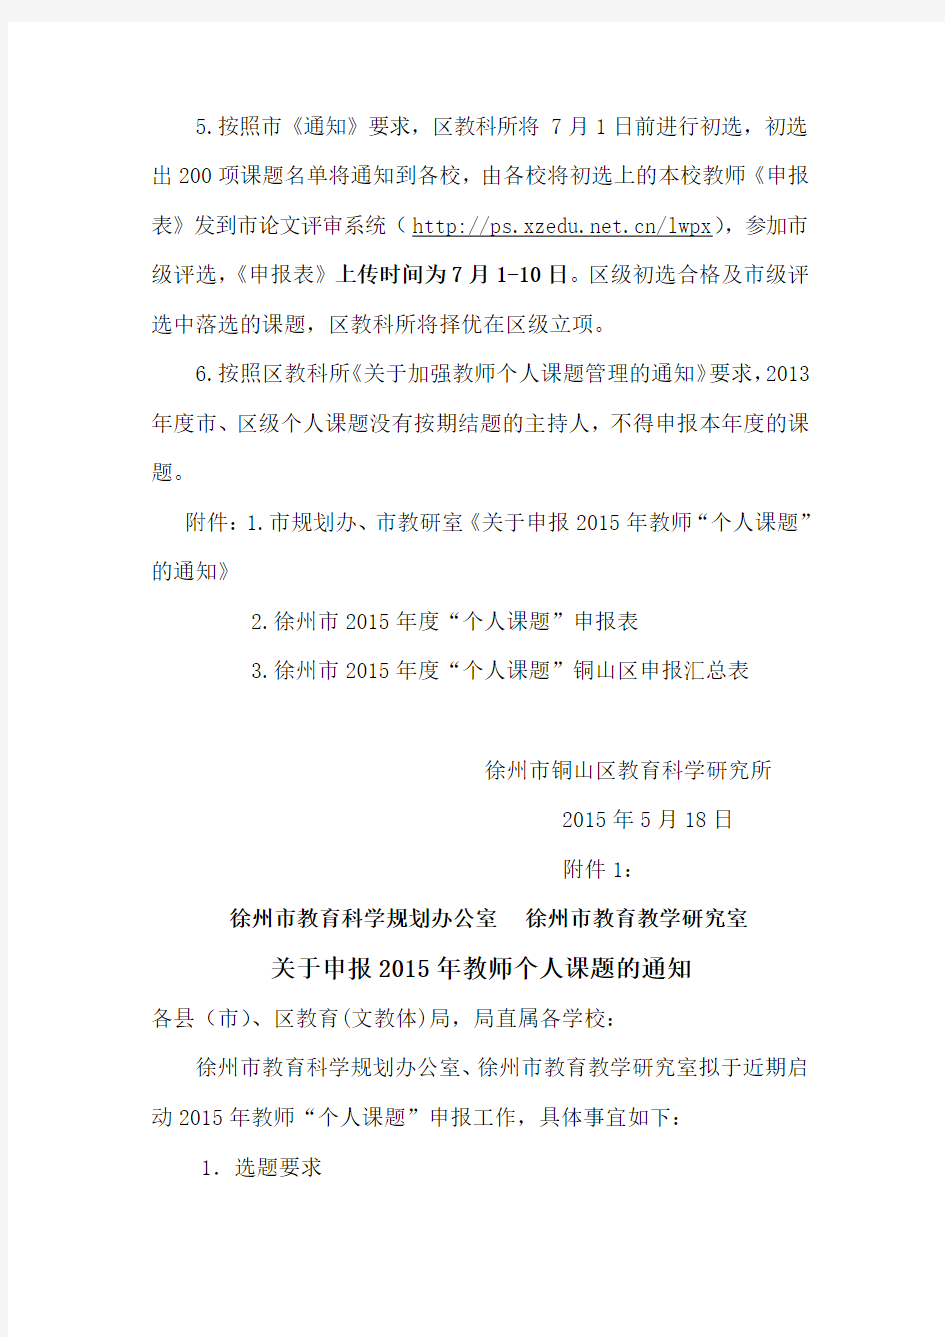 2015年徐州市教师个人课题申报通知